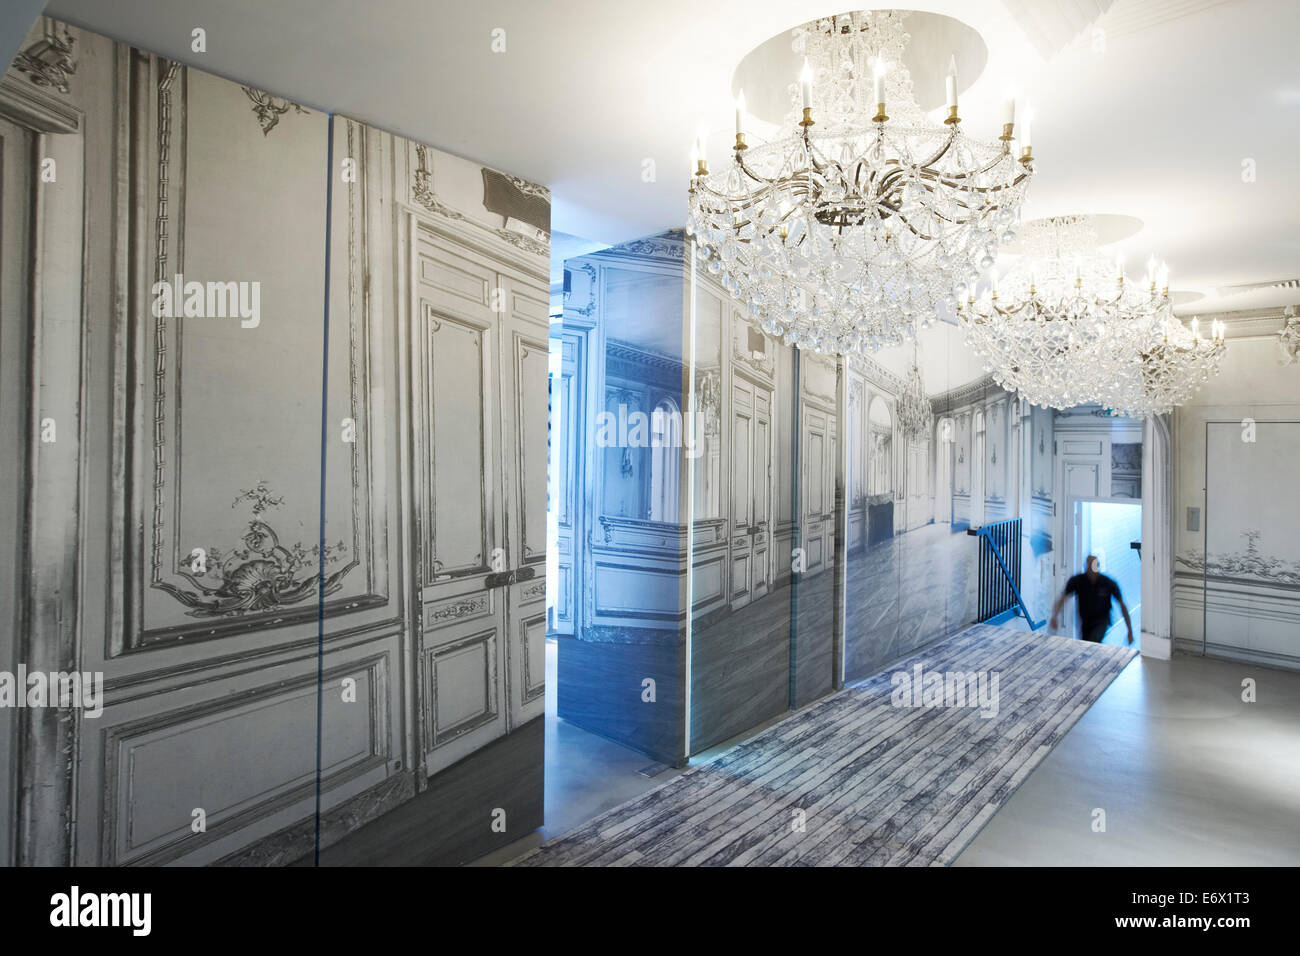 Couloir avec lustre à l'Hotel La Maison Champs-Elysees, conçu par Martin Margiela, Paris, France Banque D'Images